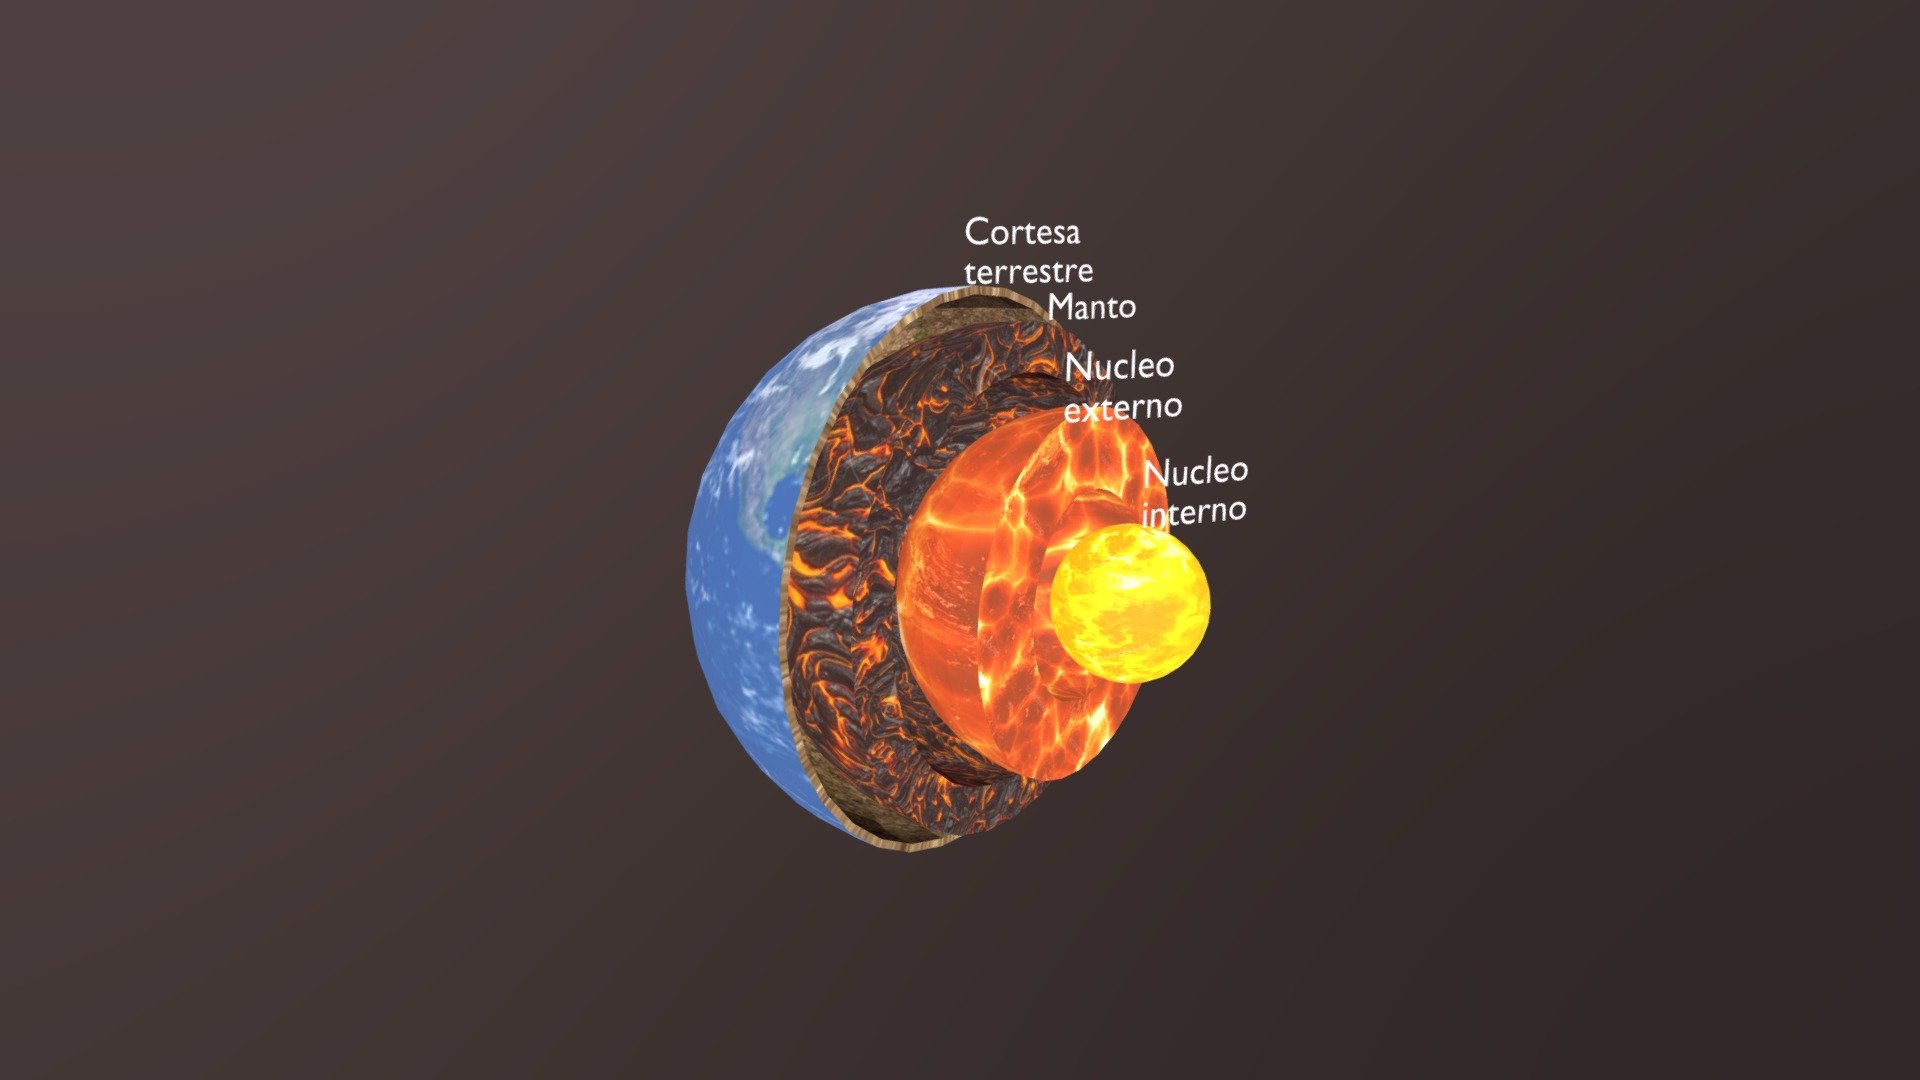 Capas internas de la Tierra - Download Free 3D model by  joserogelioverdugolopez (@joserogelioverdugolopez) [5c646f8]